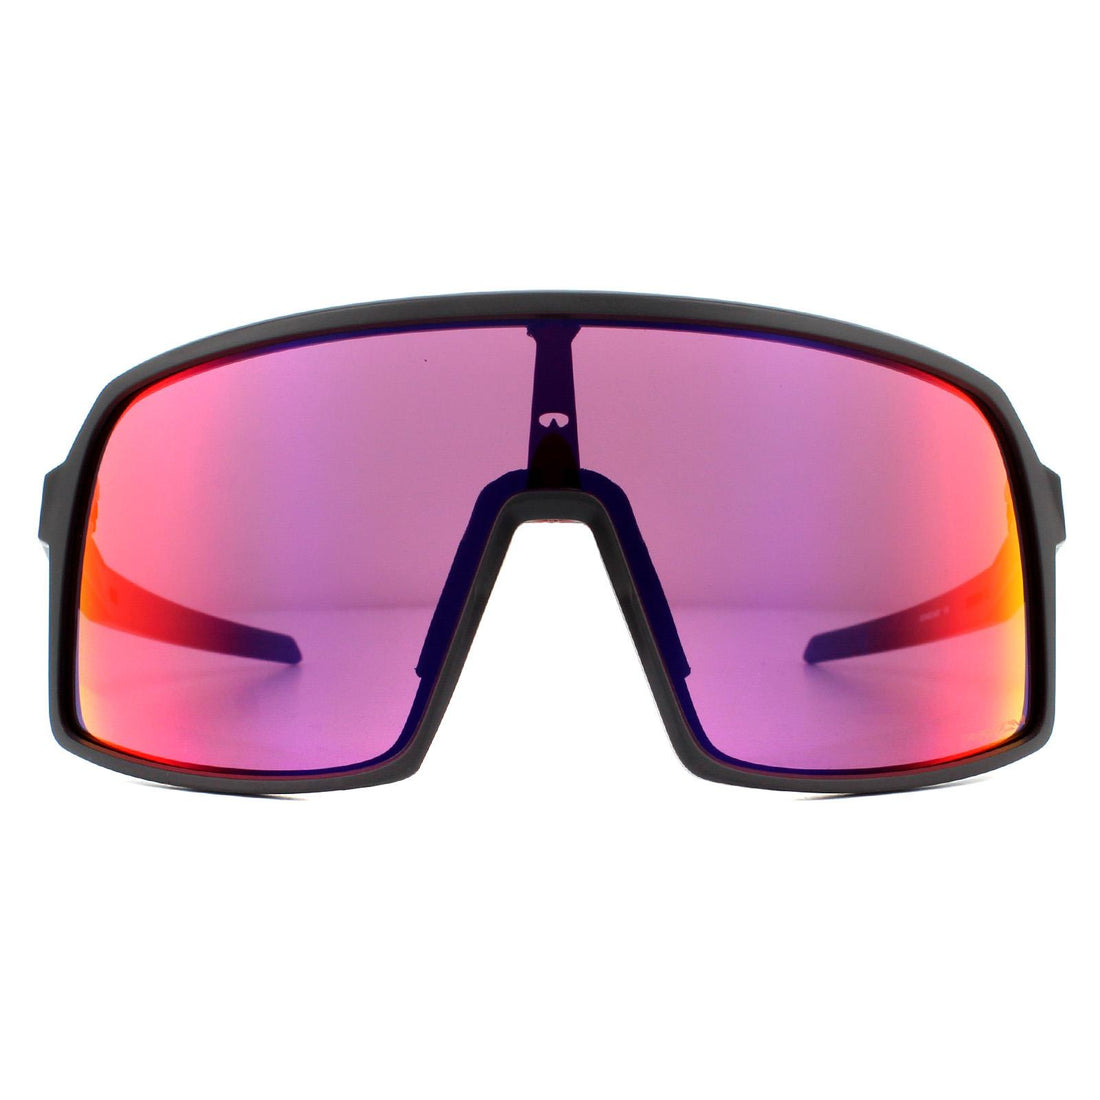 Oakley Sutro S Sunglasses Matte Black Prizm Road